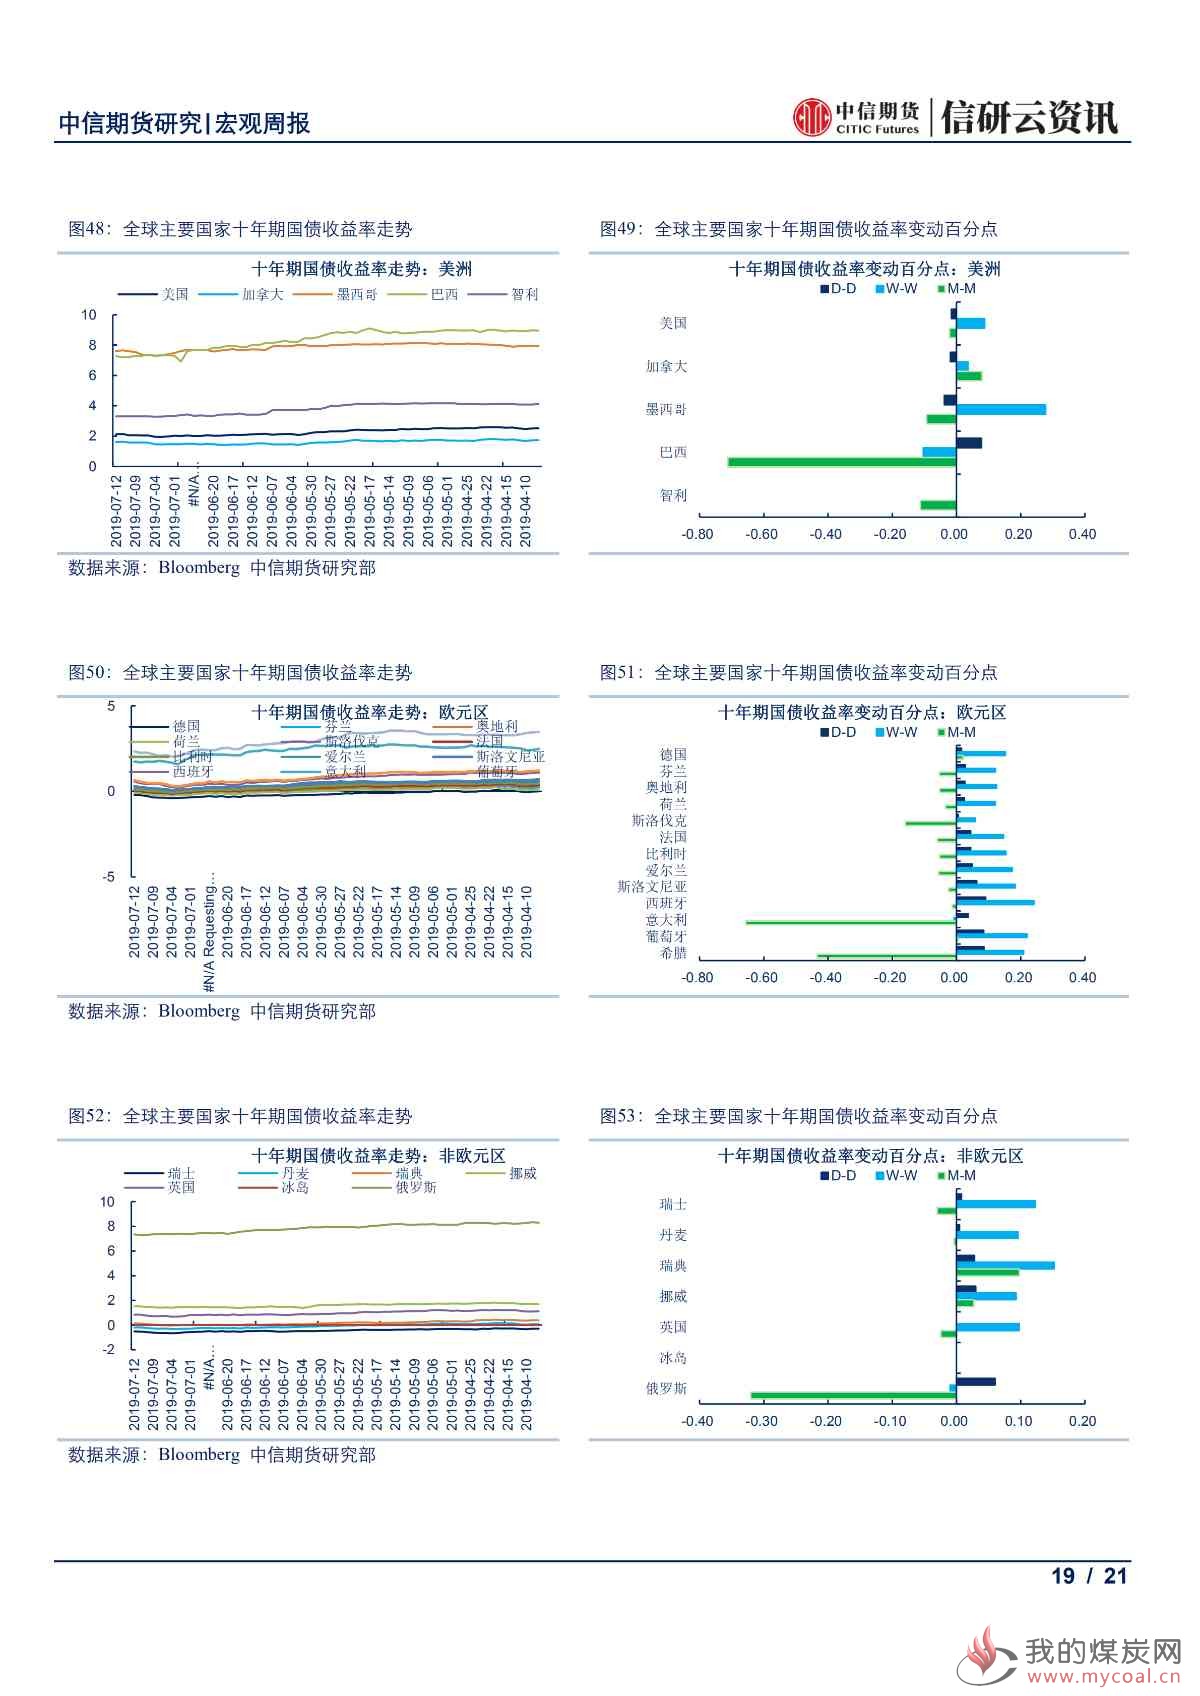 【中信期货宏观】全球央行鸽派倾向更甚 本周市场静待中国6月经济数据出炉——周报20190715_18